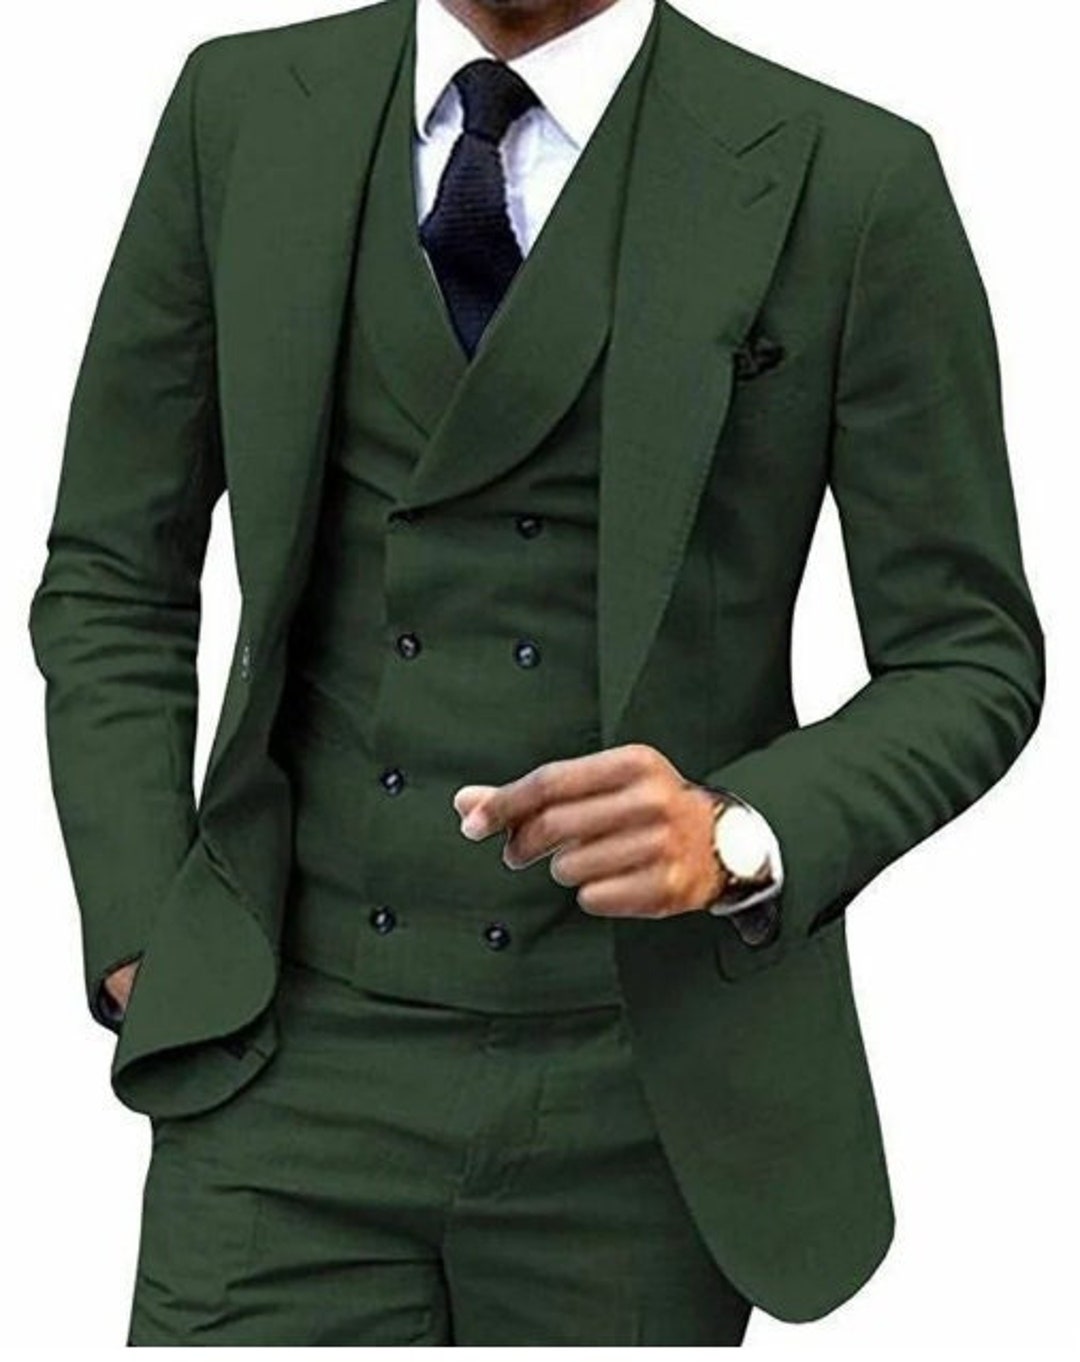 Men Suits Suits for Men Green 3 Piece Tuxedo Wedding Suit/ - Etsy